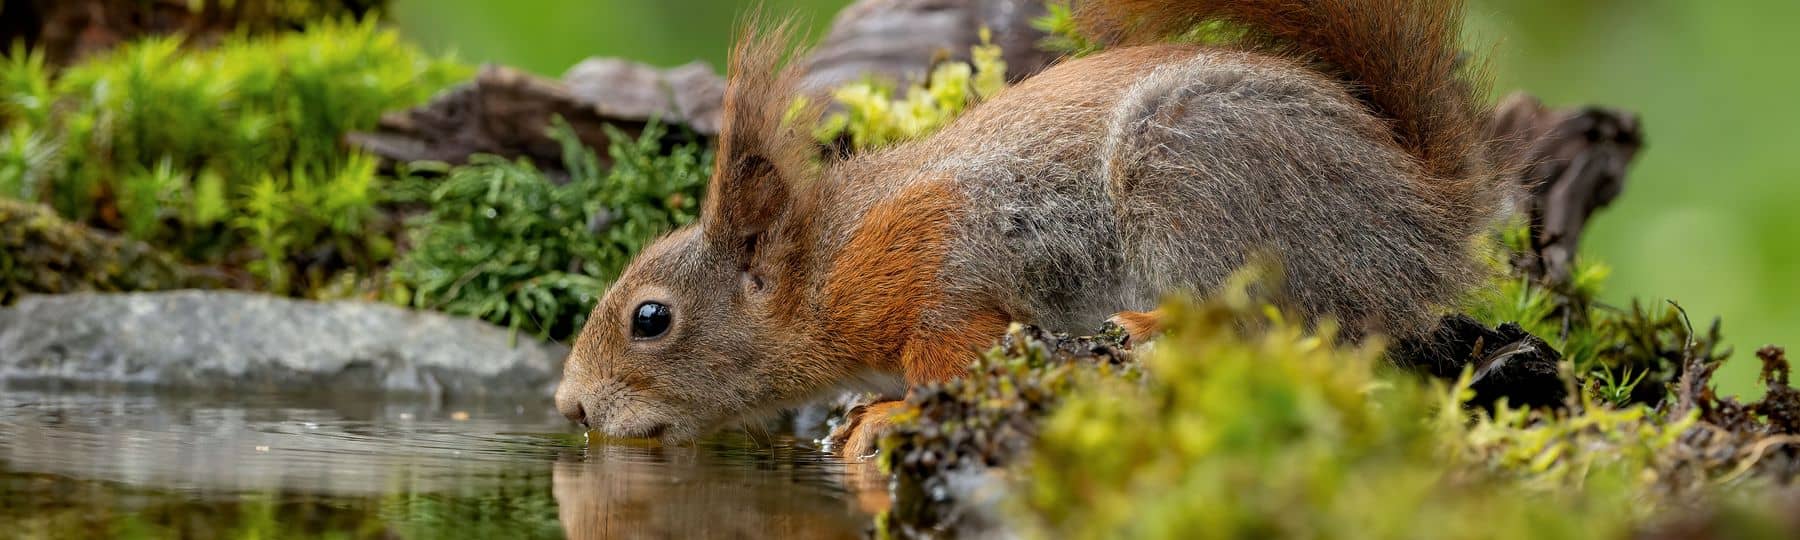 Foto van een eekhoorn die drinkt uit een natuurlijke vijver.